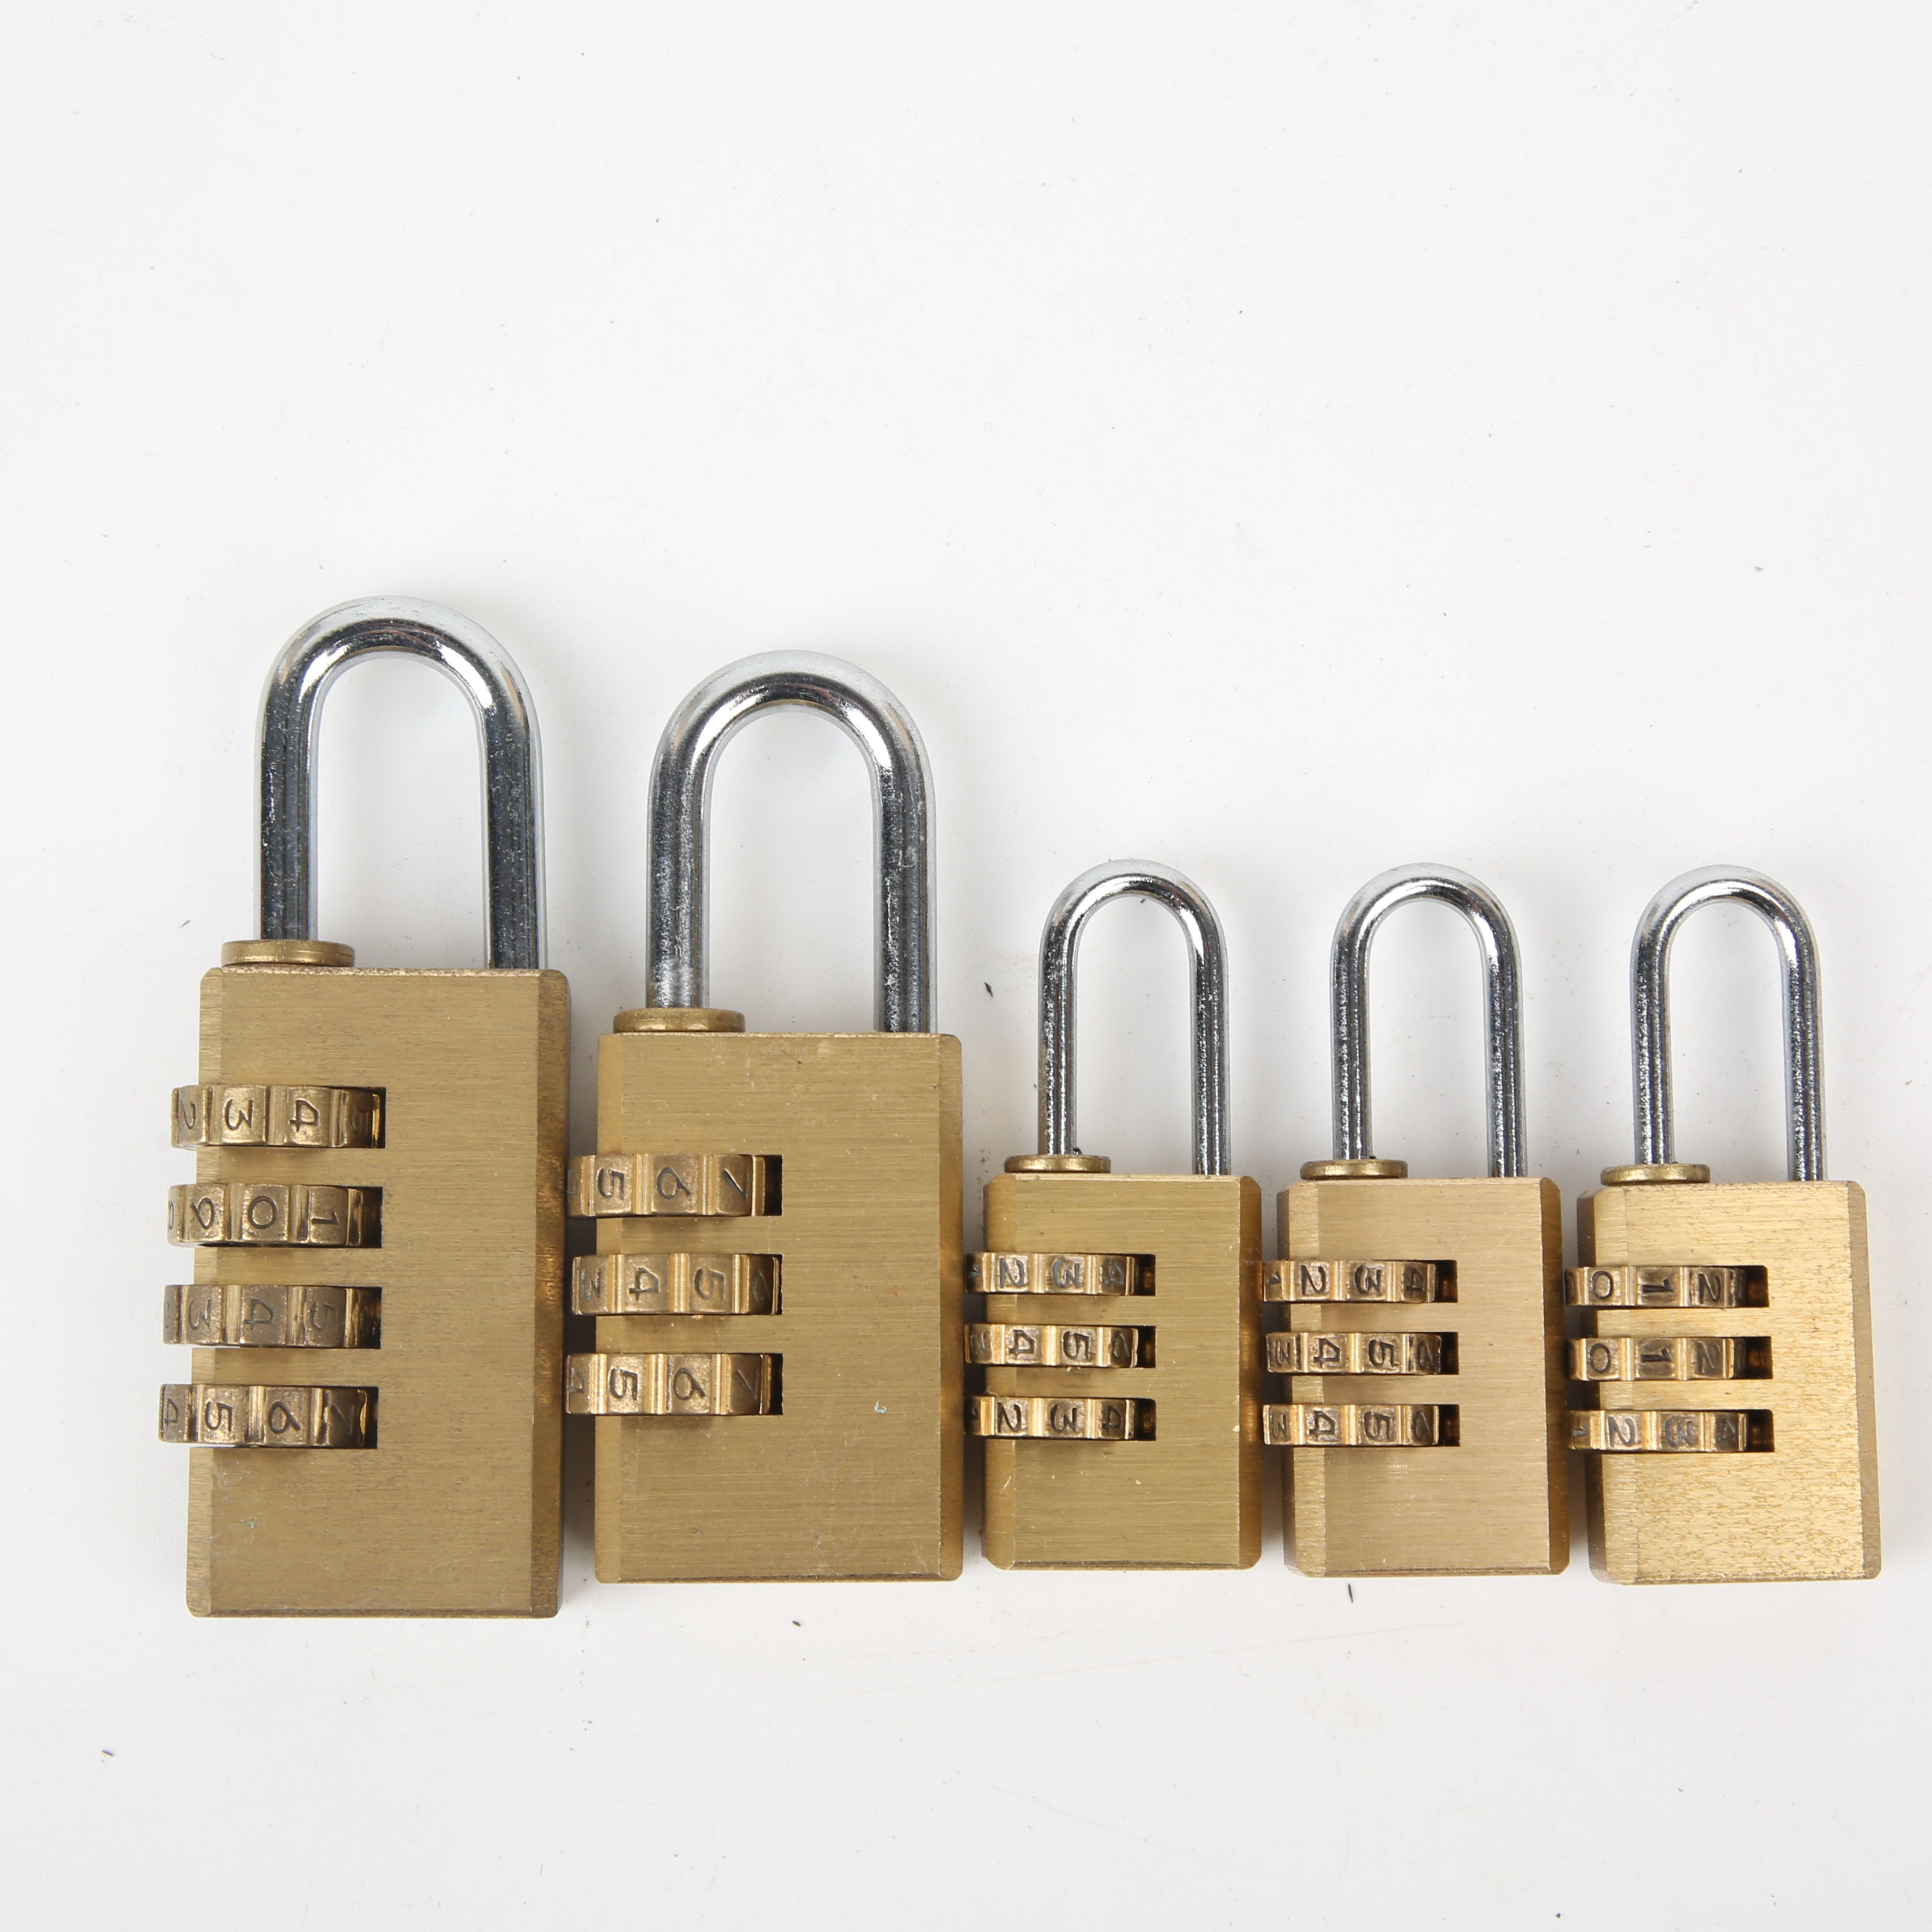 密码锁，铜密码锁 按键锁，按键密码锁，行李箱锁，箱包密码锁，金色锁，砂光铜锁  字电镀锁，挂锁，